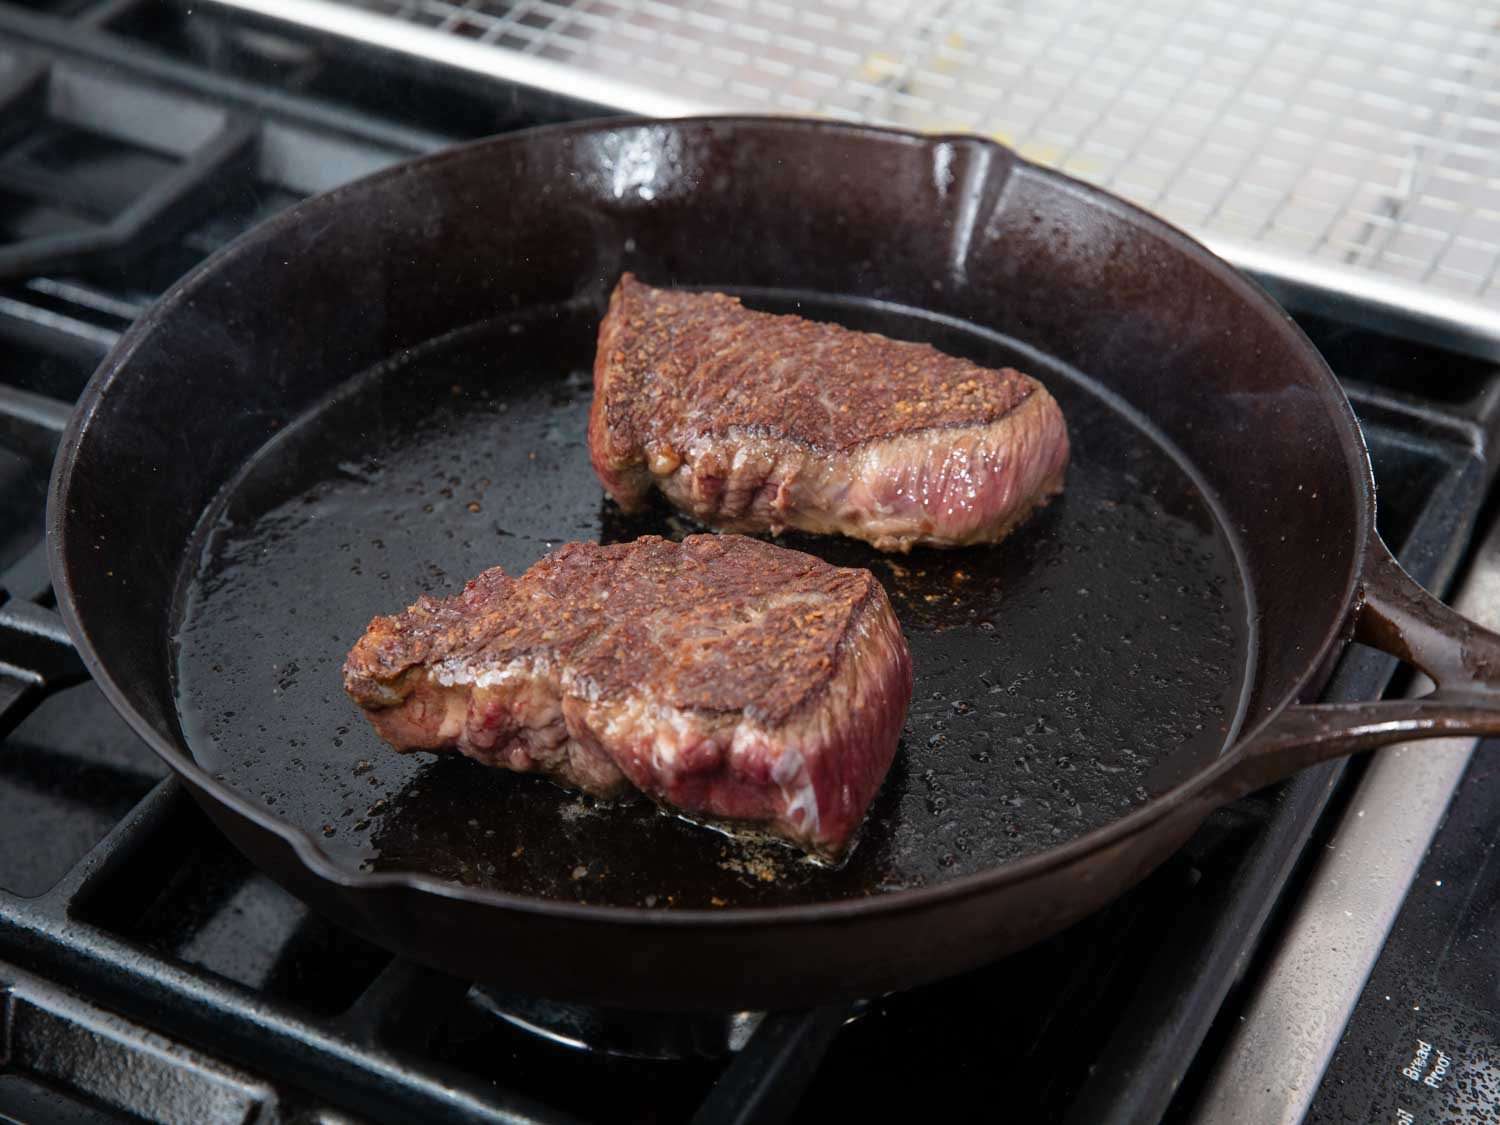 用铸铁煎锅烤短肋排。几乎每个煎锅，在完全预热的情况下，都能把肉的两面都烤得很焦。